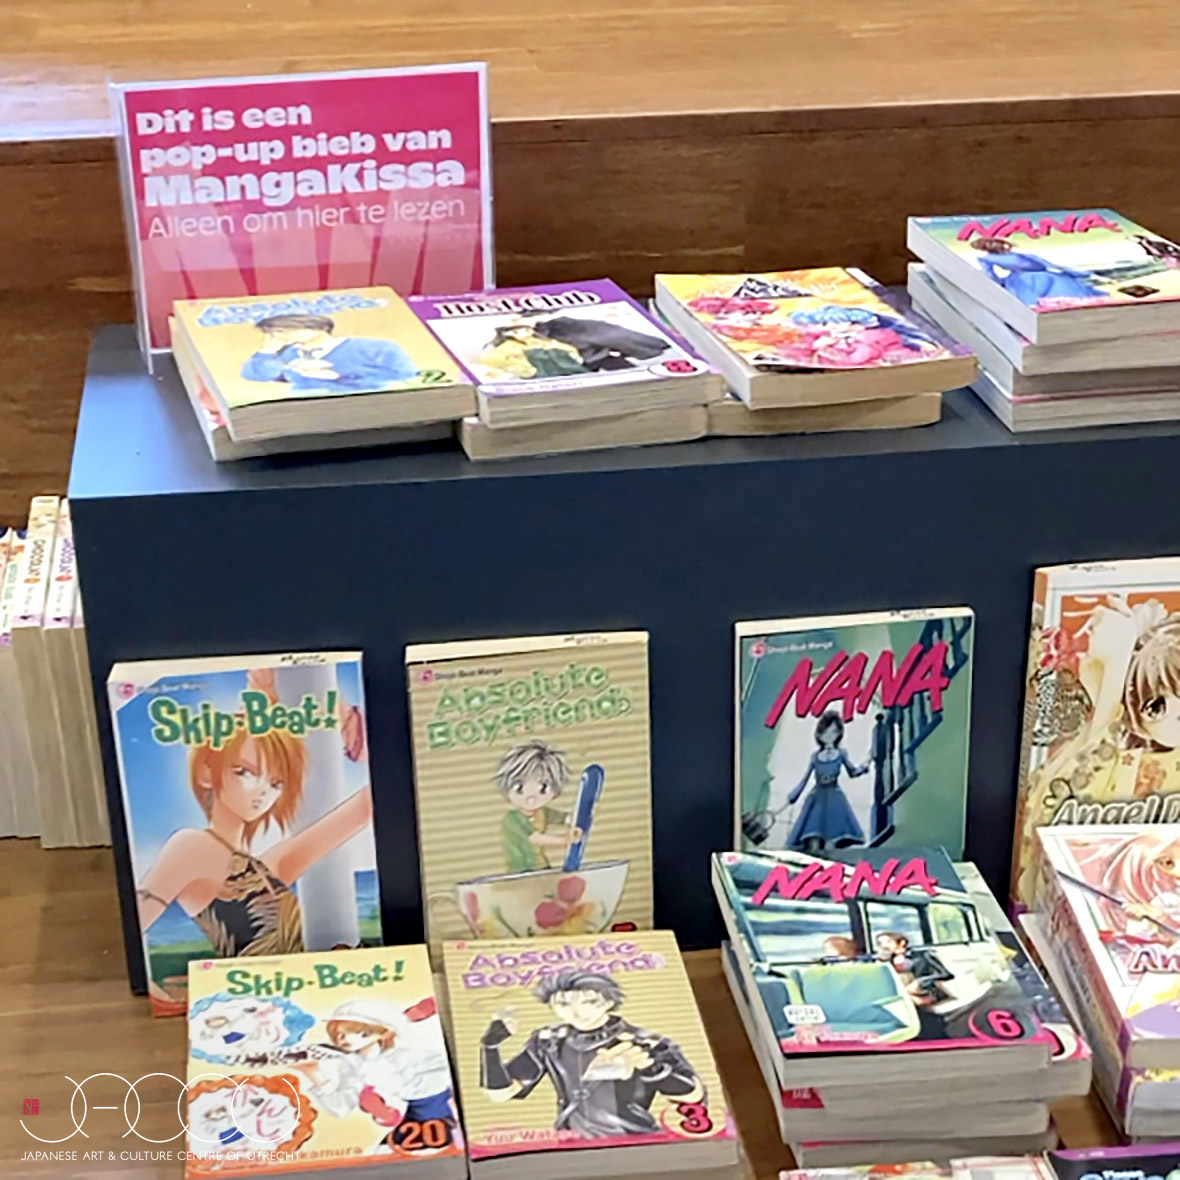 manga japanese culture event bibliotheek utrecht